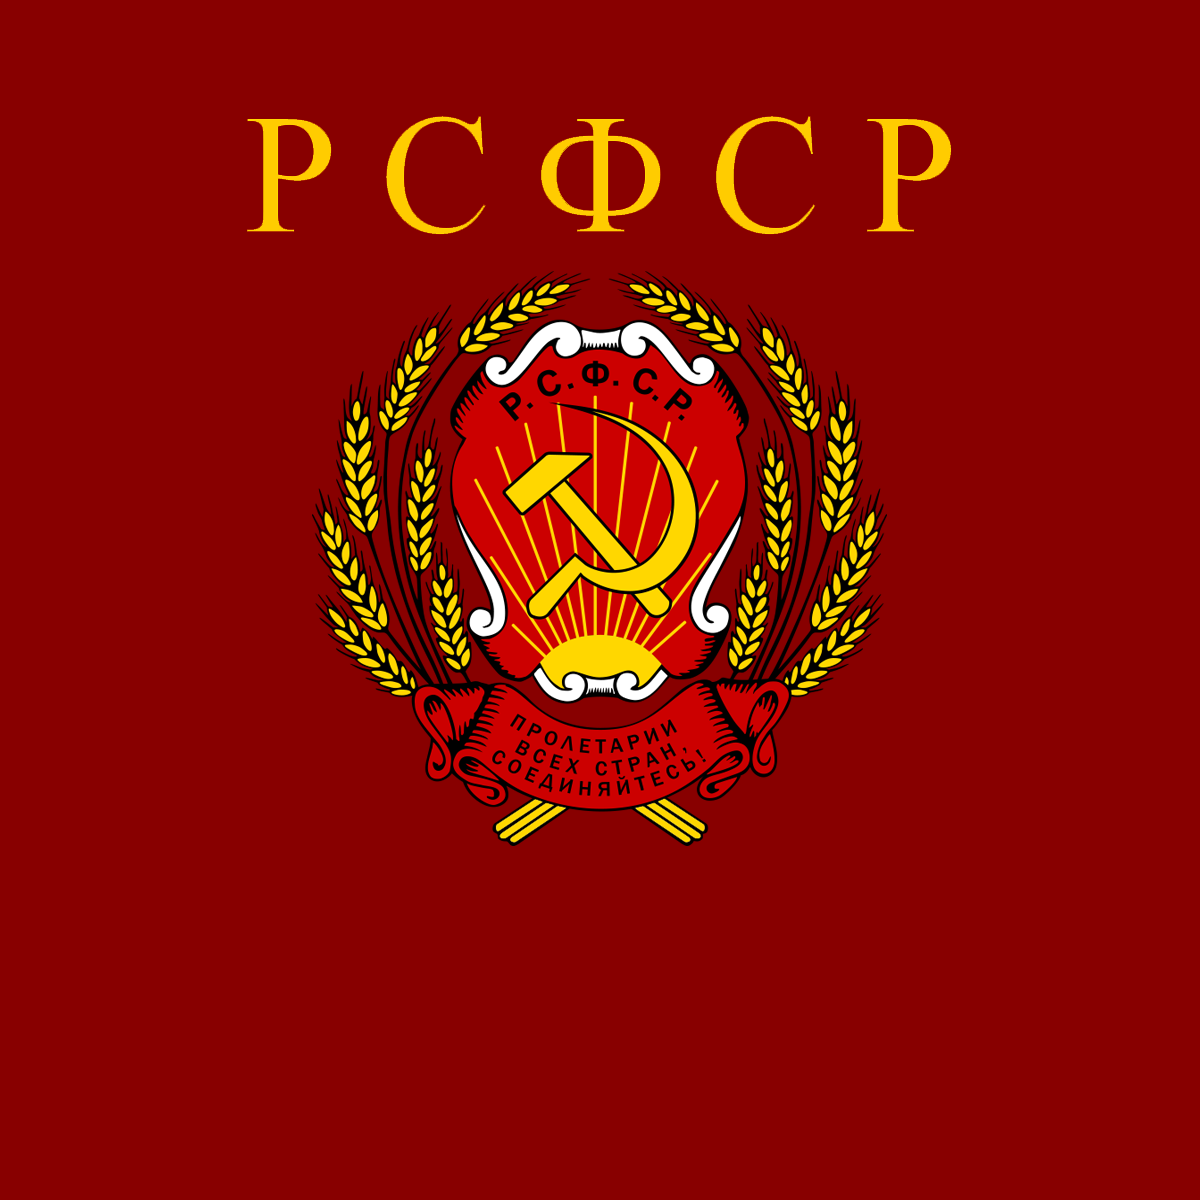 Russian Soviet Federative Socialist Republic Flag 1954 1991 Circle Logo.  Soviet Union Flag vector illustration 6636818 Vector Art at Vecteezy